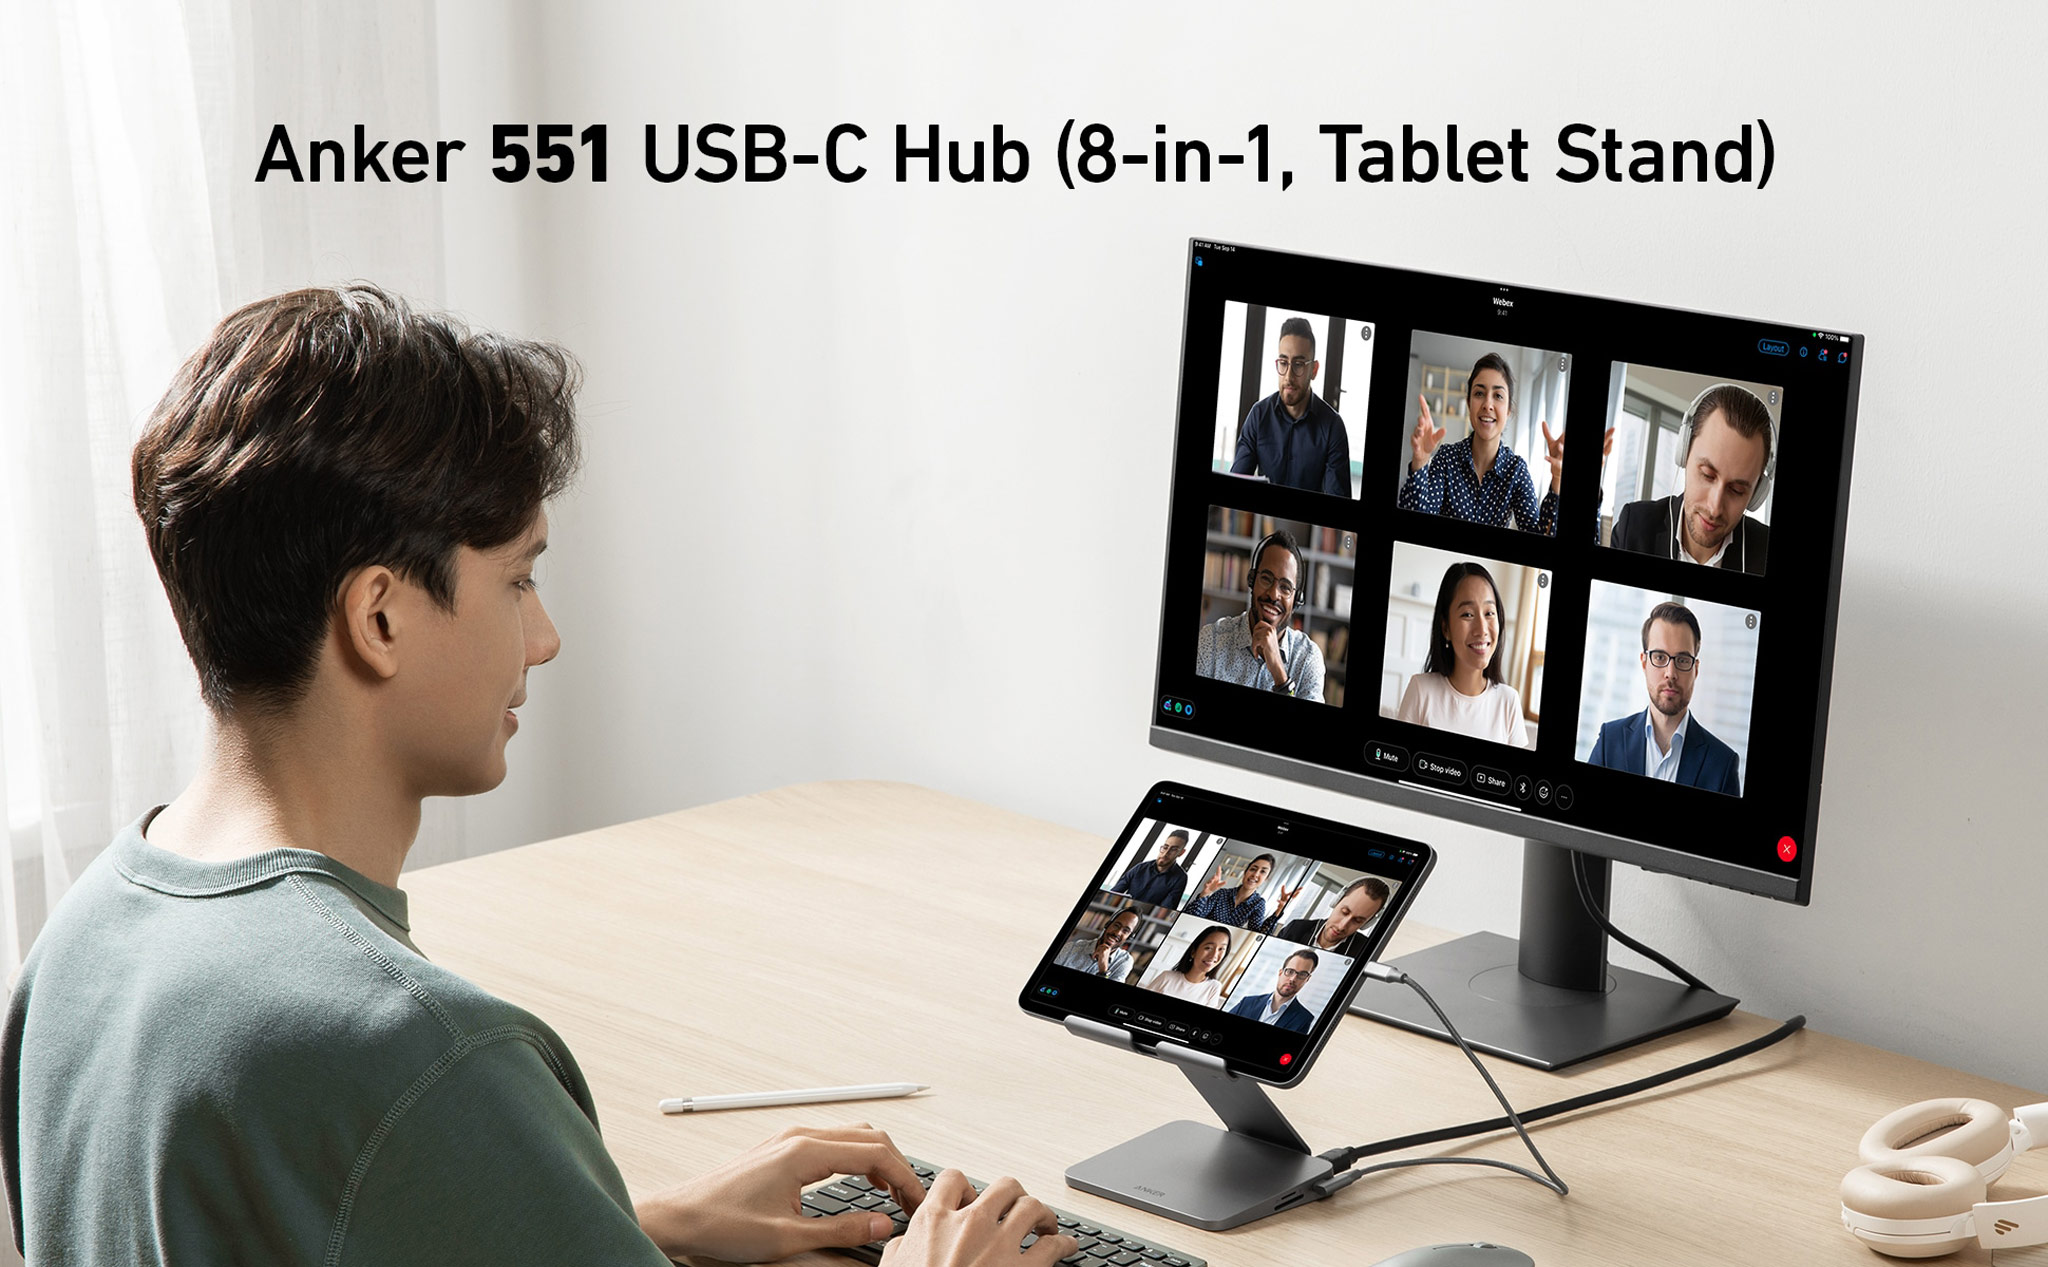 Anker ra mắt hub USB-C cho tablet USB-C: kiêm luôn giá đỡ, 6 cổng kết nối, tăng khả năng làm việc